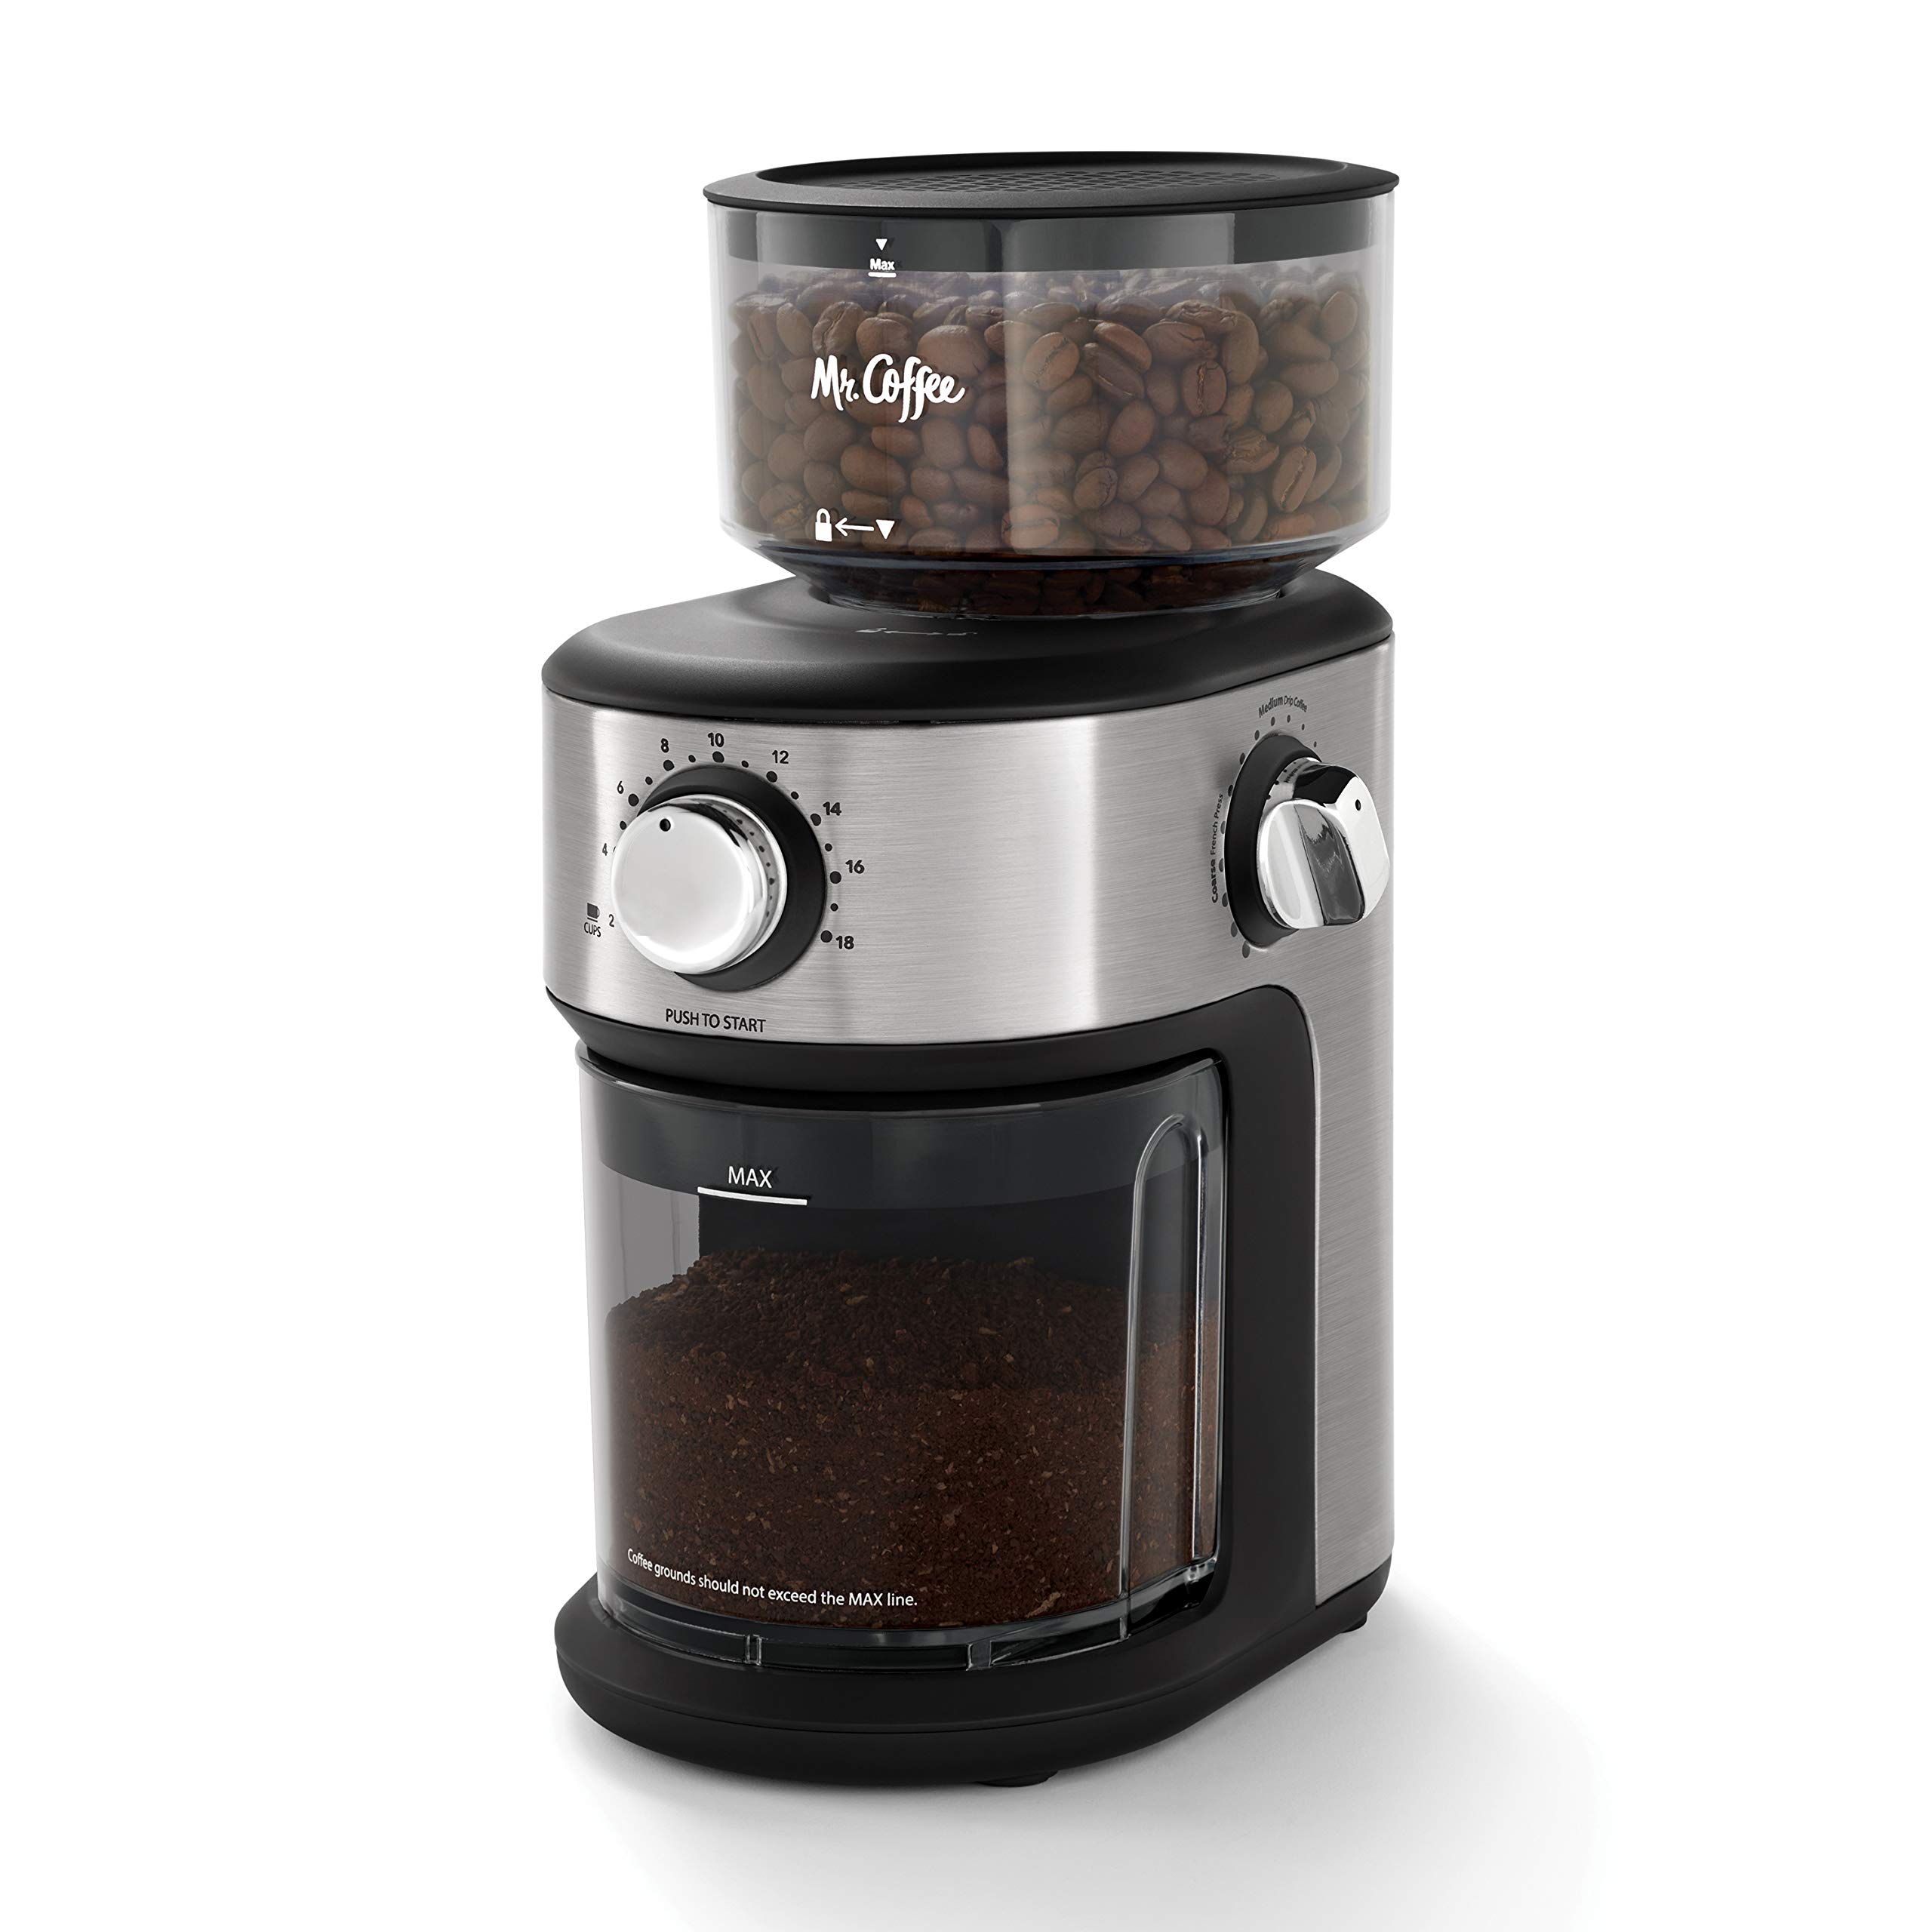 Mr. Coffee Автоматическая кофемолка Burr Mill с 18 специальными кофемолками